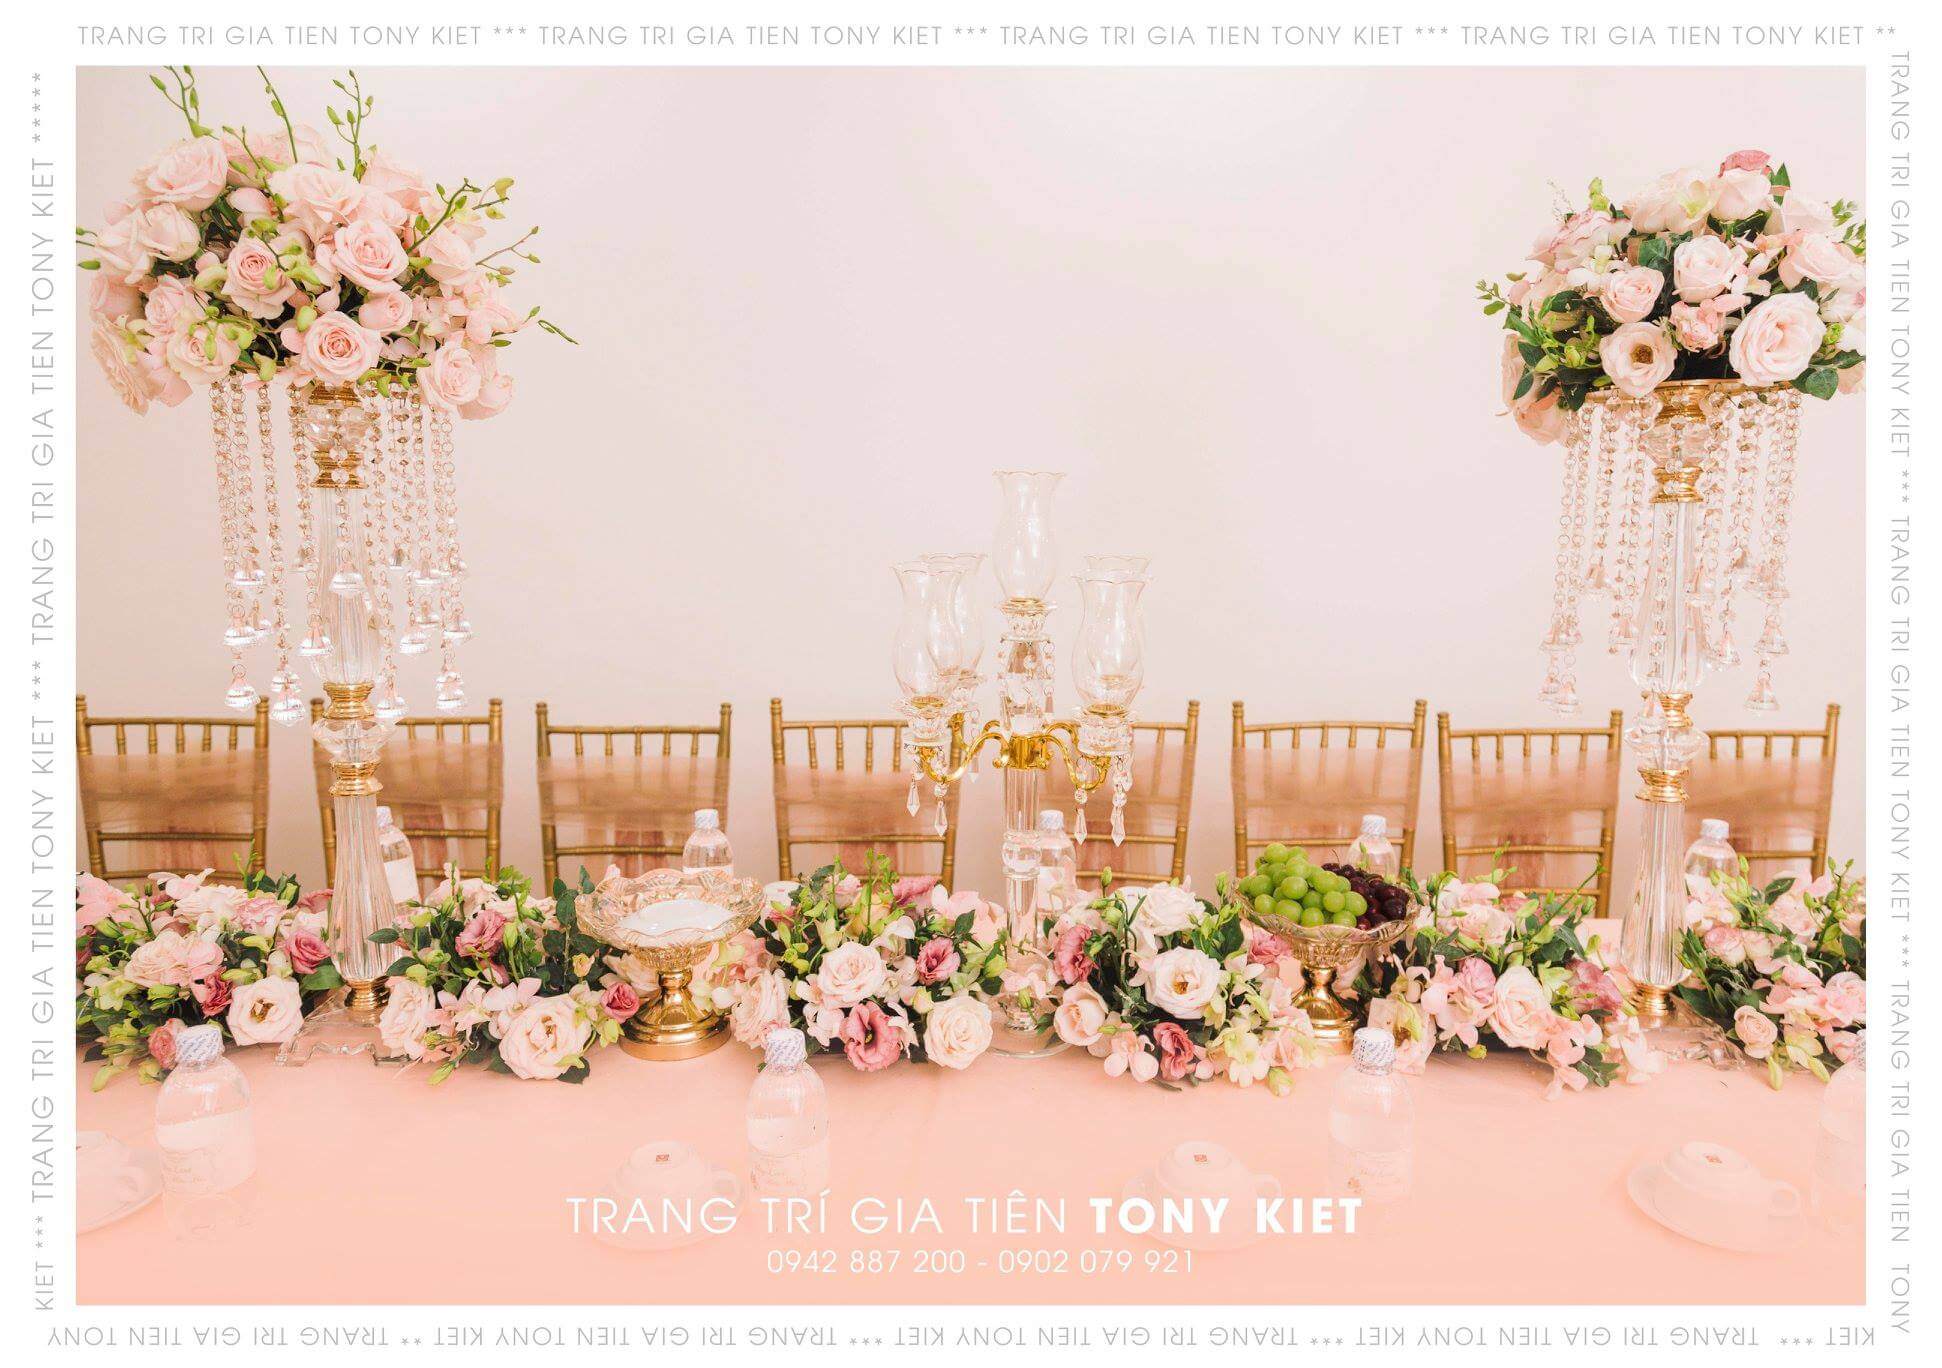 Tony Kiệt Marry